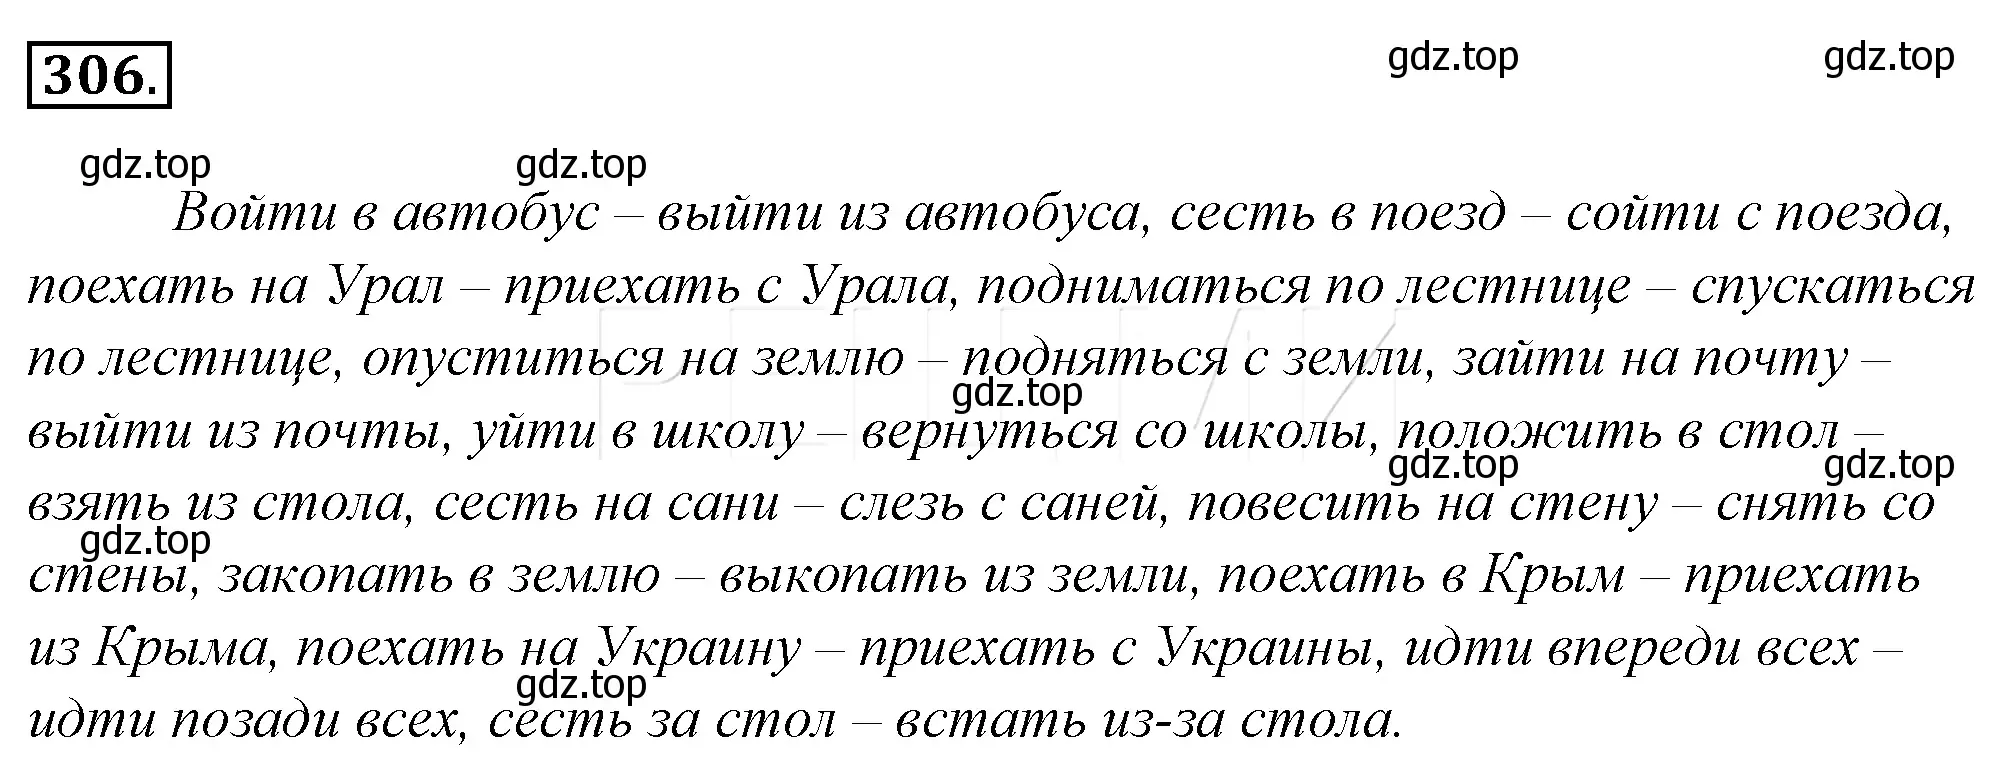 Решение 4. номер 330 (страница 307) гдз по русскому языку 10-11 класс Гольцова, Шамшин, учебник 1 часть